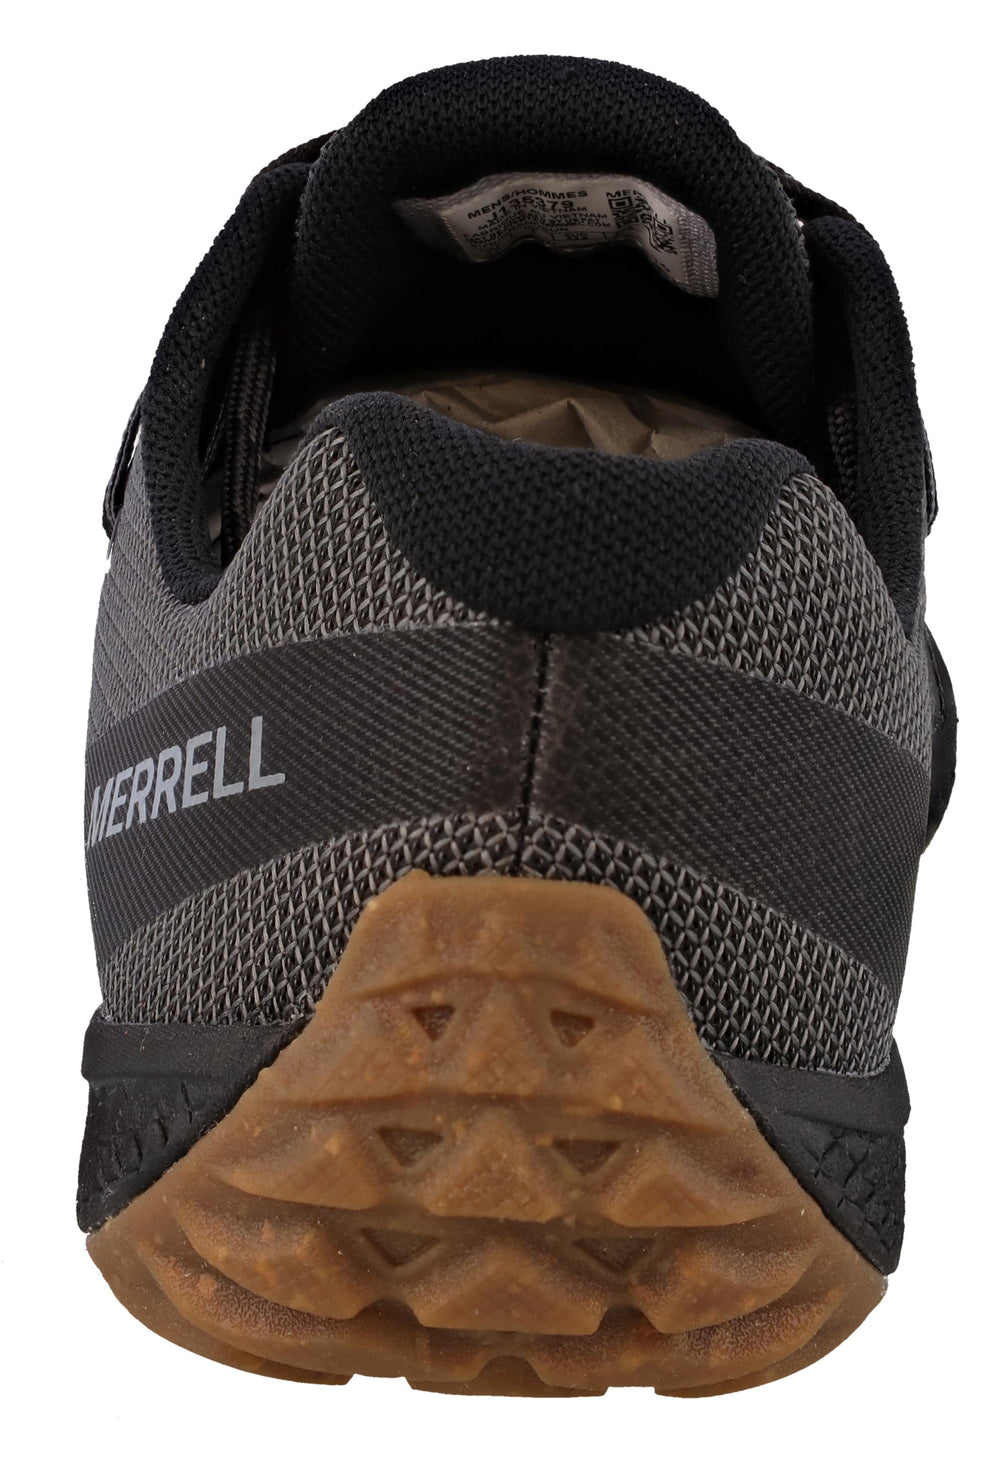 Vapor Glove 6, Merrell Footwear